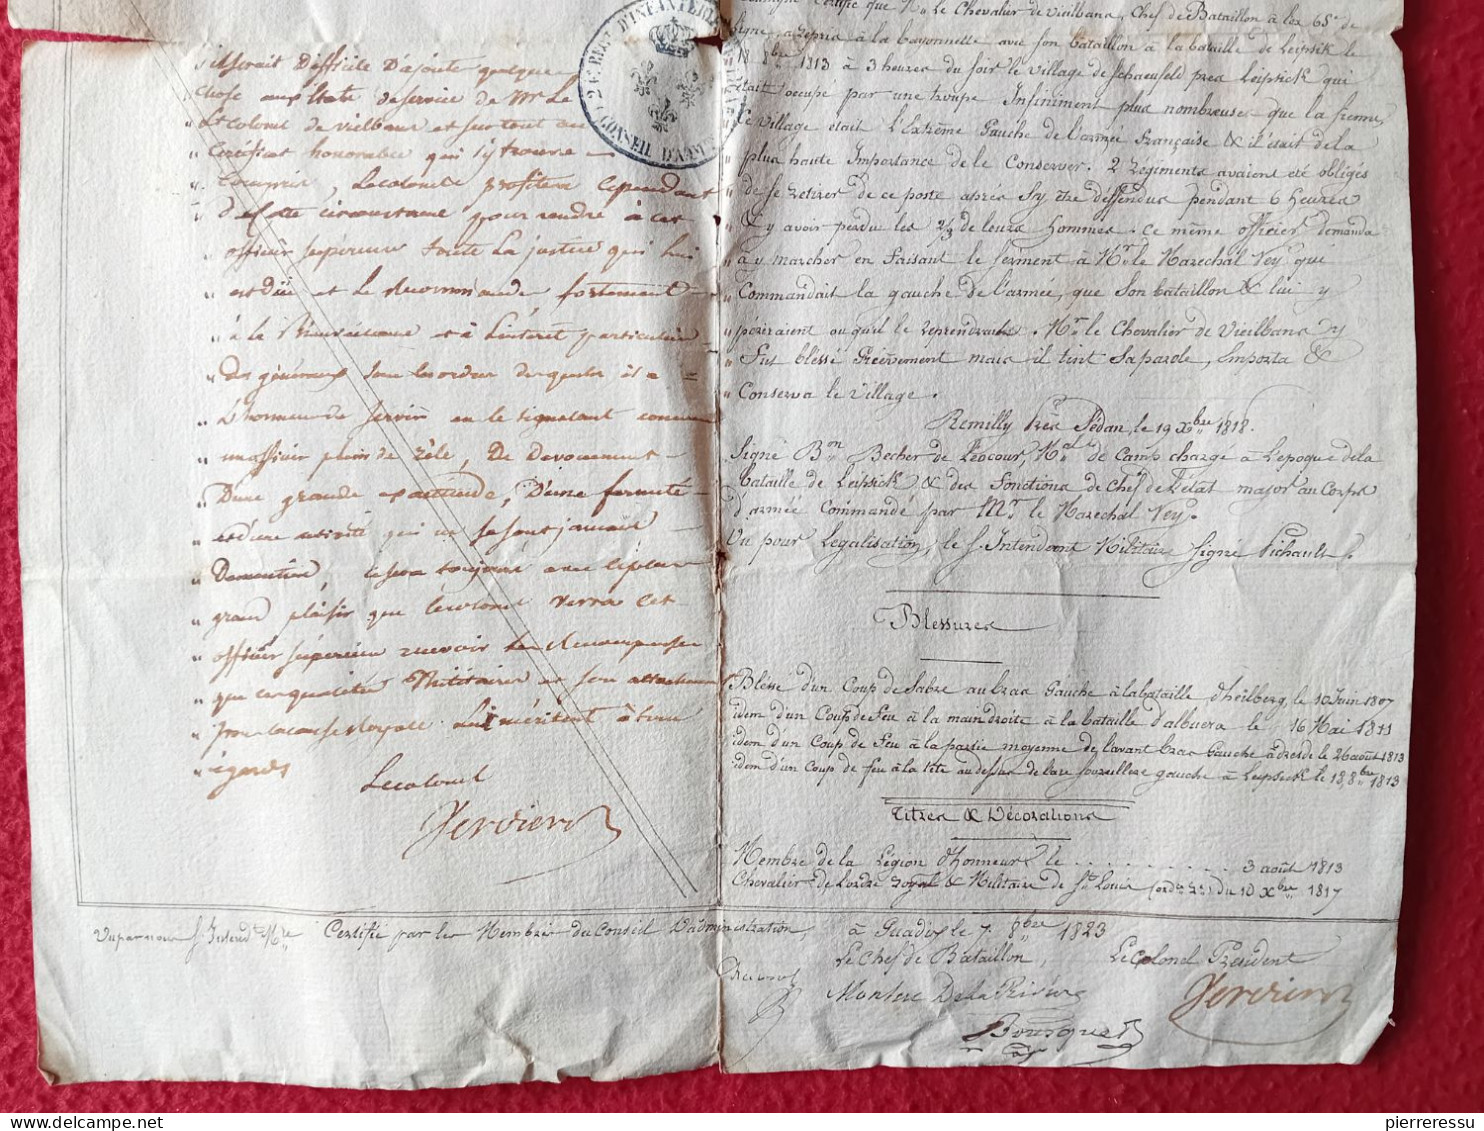 DIPOLME BREVET CERTIFICAT GARDE IMPERIALE VIEILBANS JACQUES 1823 A GUADIX EXPEDITION D ESPAGNE AUTOGRAPHES - Documentos